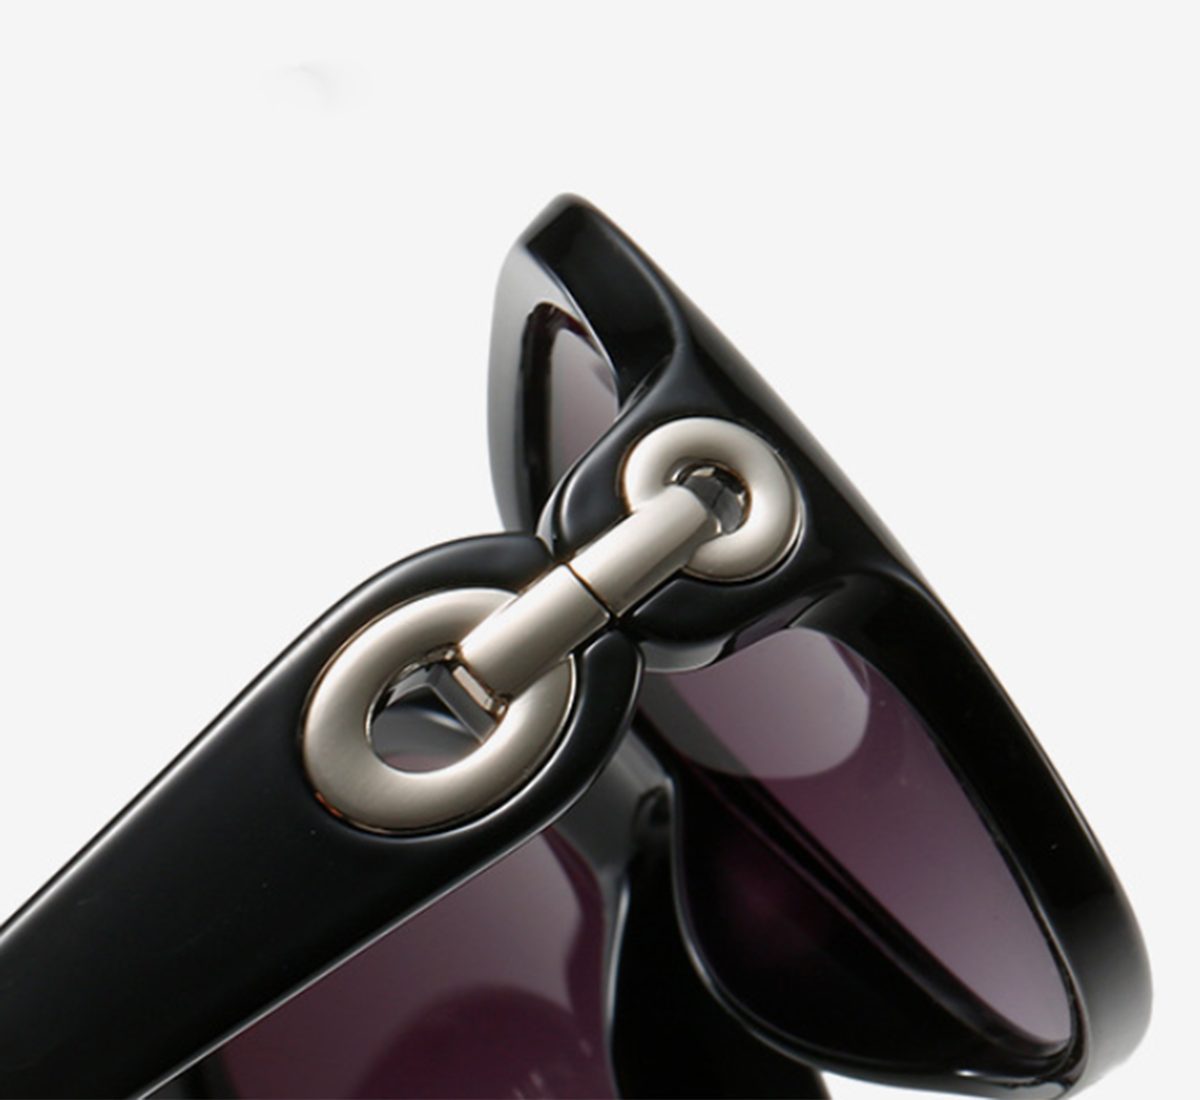 Haiaveng Sonnenbrille Sonnenbrille Damen-Polarisiert Retro Vintage im Damen Sonnenbrille Rechteckige Unisex UV400 für